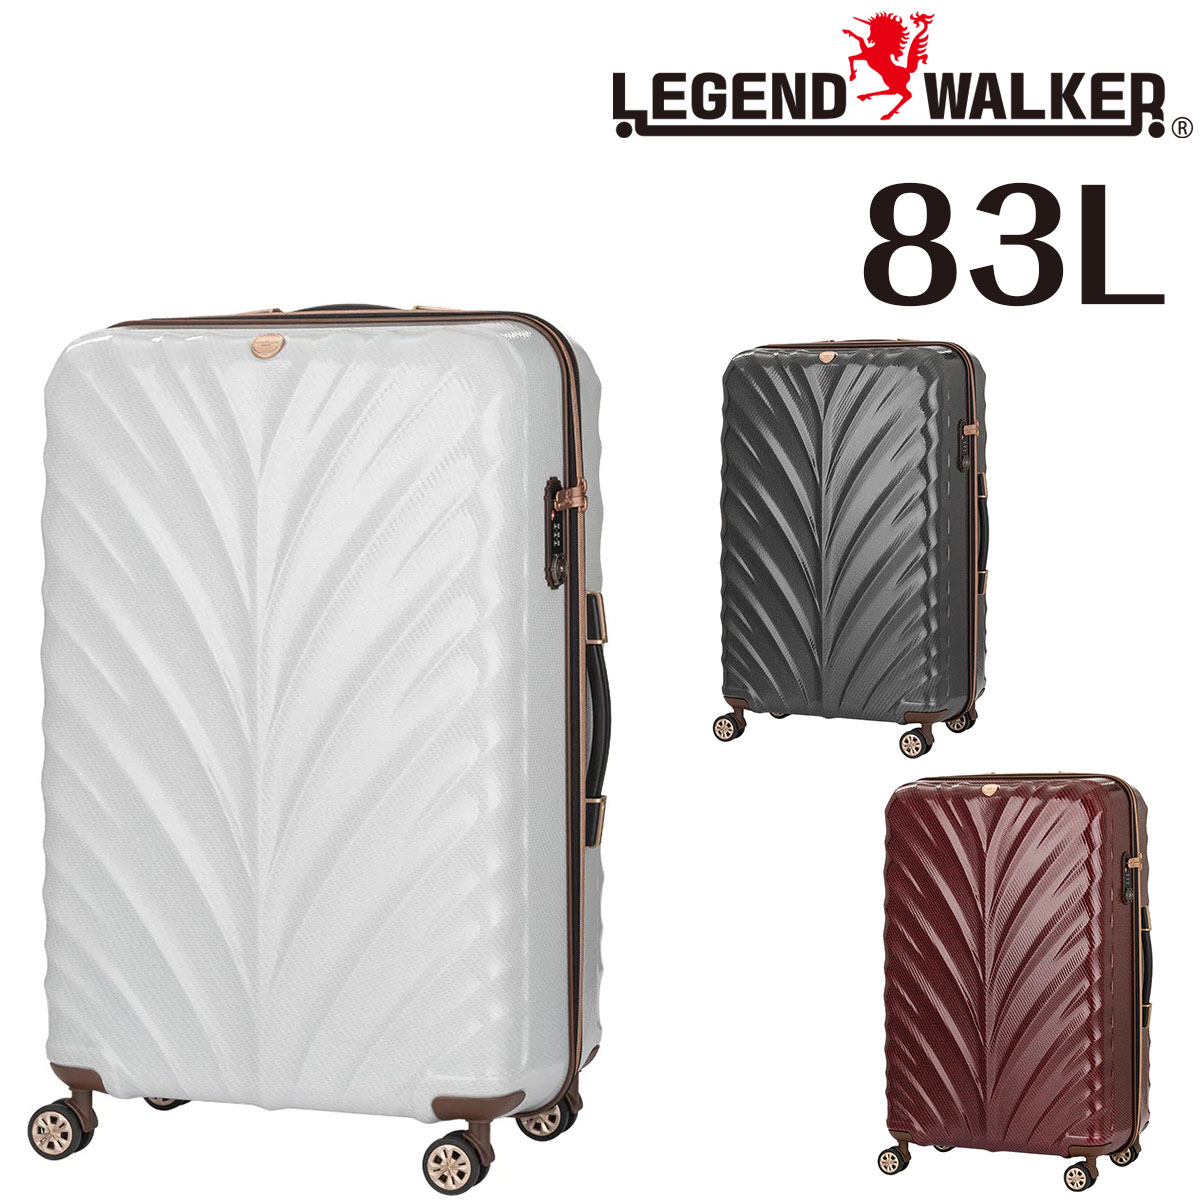 【メーカー直送】 レジェンドウォーカー LEGEND WALKER リース WREATH スーツケース キャリー ハード 大型 83L 7泊〜 Lサイズ ファスナー